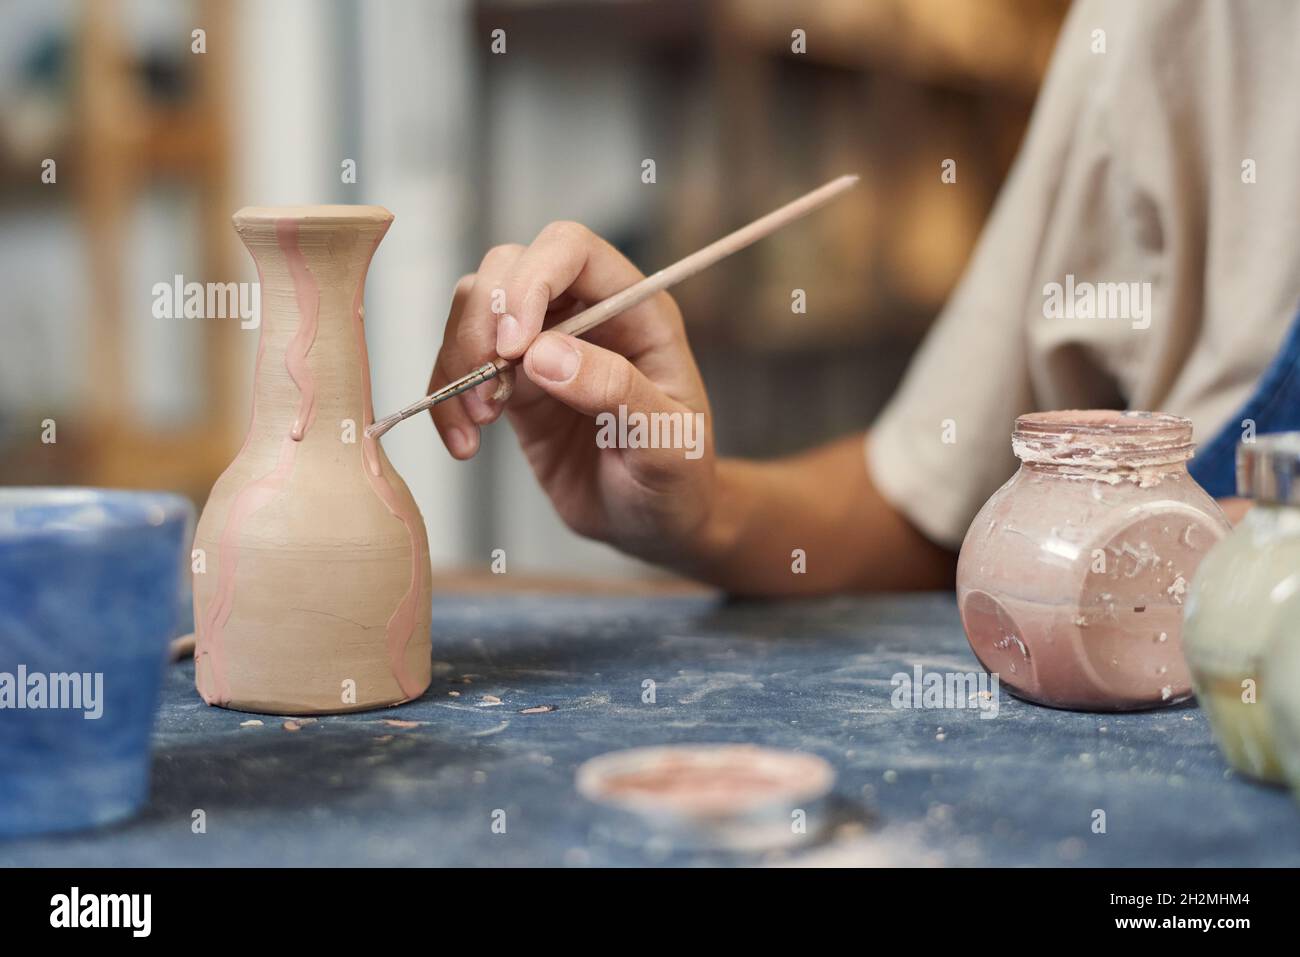 Immagini Stock - Vaso In Ceramica Per Modellare Potter Da Argilla